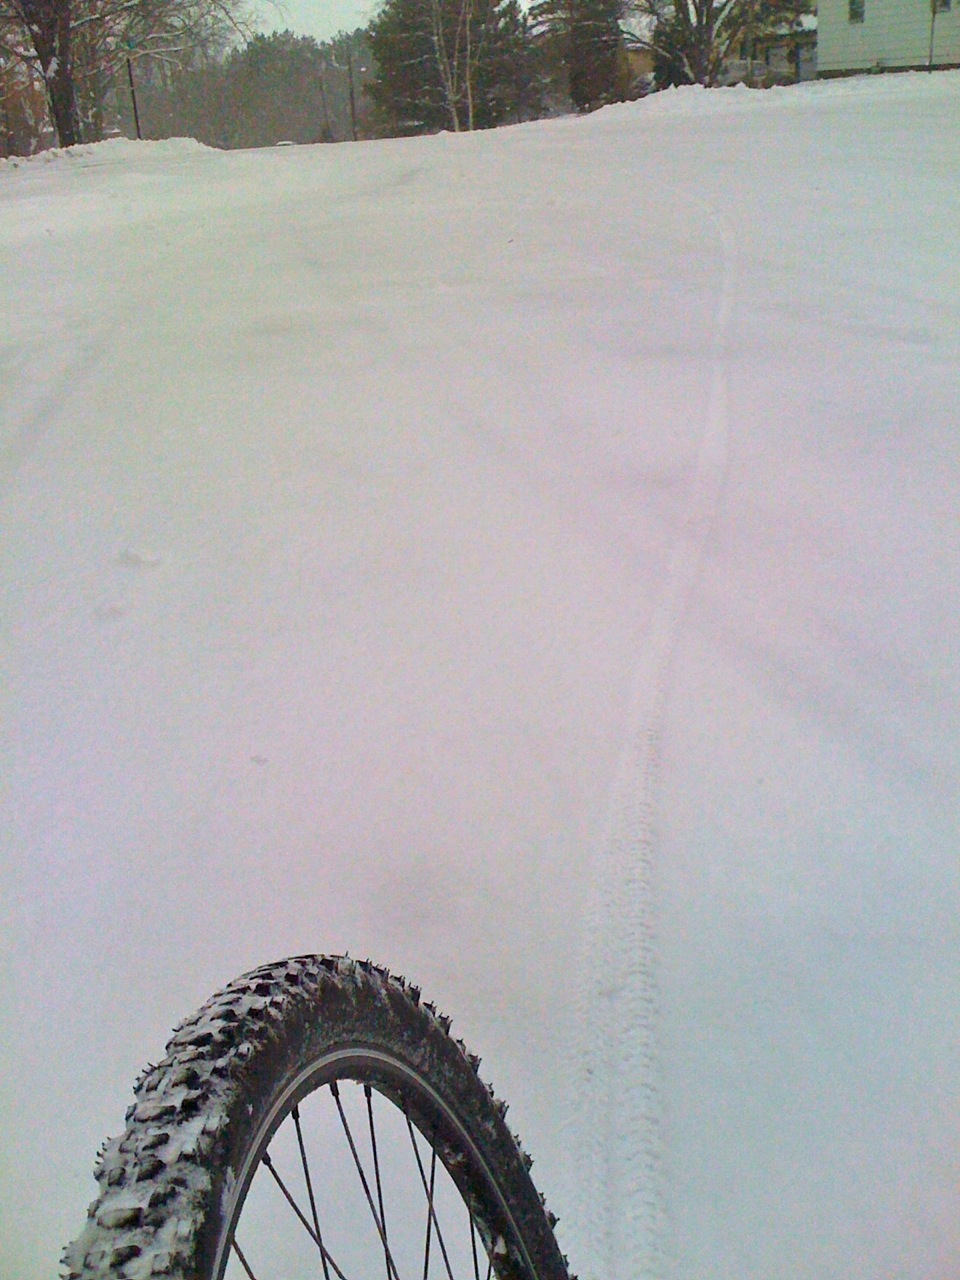 Mountain bike track through the snow